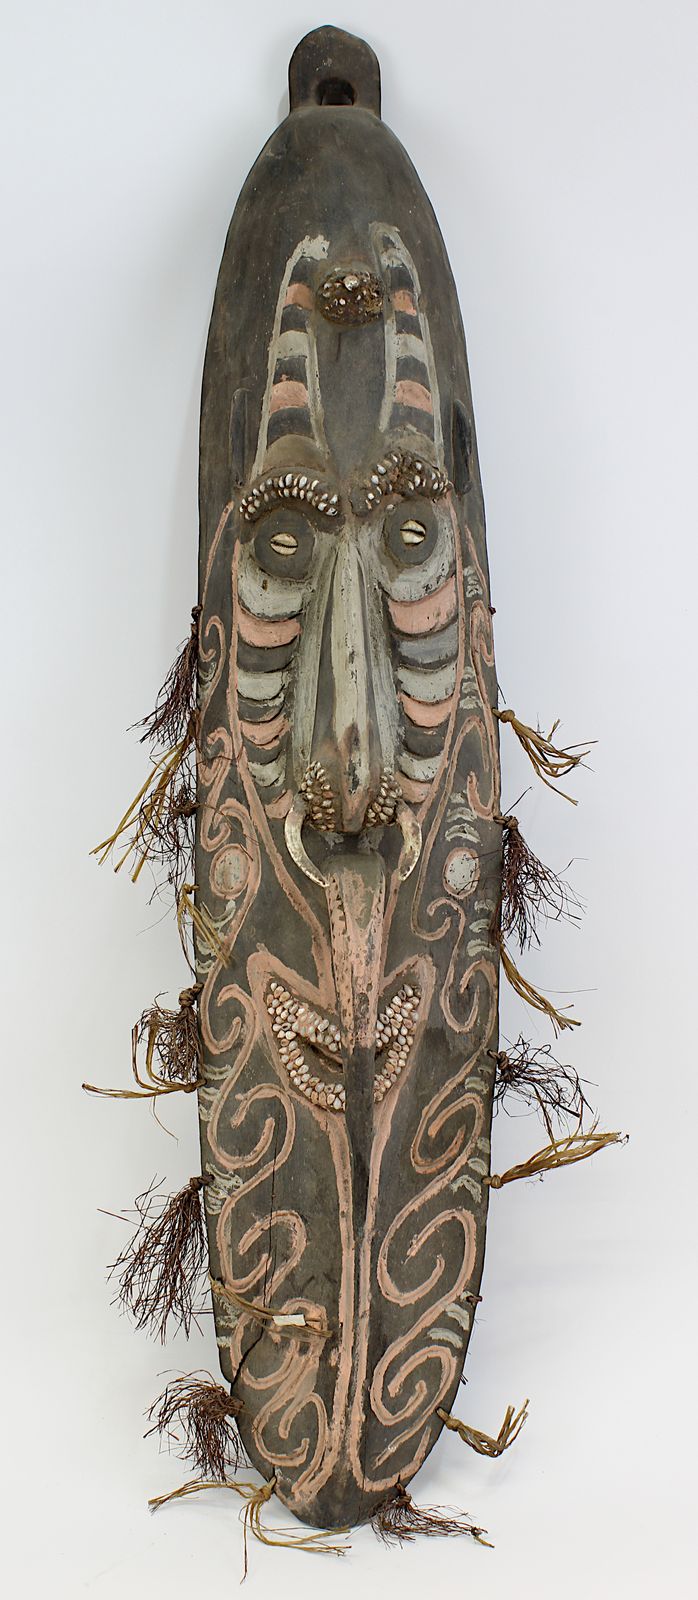 Große Maske vom Sepik, Papua-Neuguinea, lange schmale Gesichtsmaske mit lächelndem Mund und